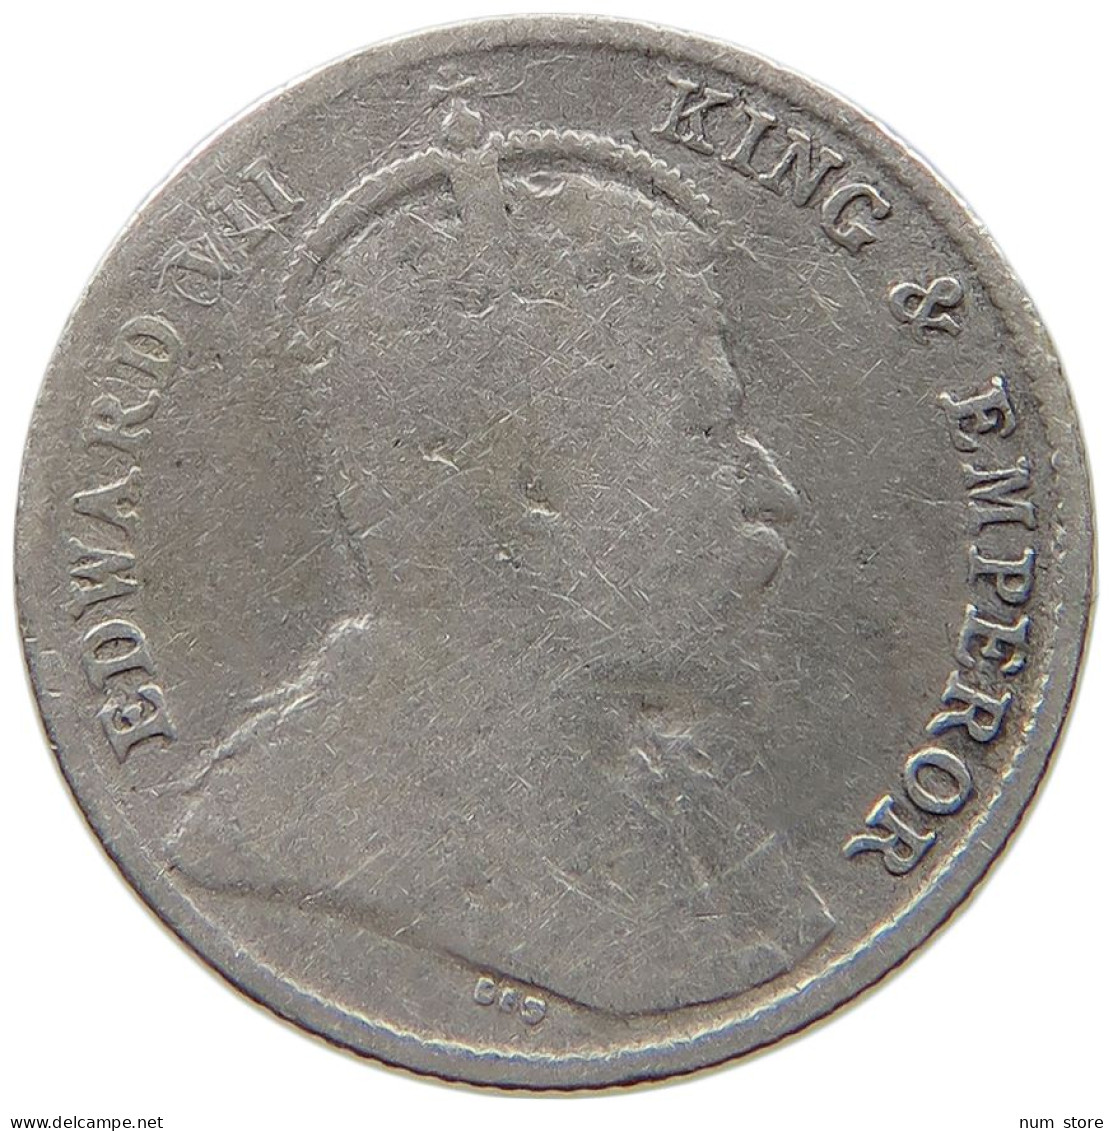 CEYLON 10 CENTS 1910 Edward VII., 1901 - 1910 #a091 0921 - Sri Lanka